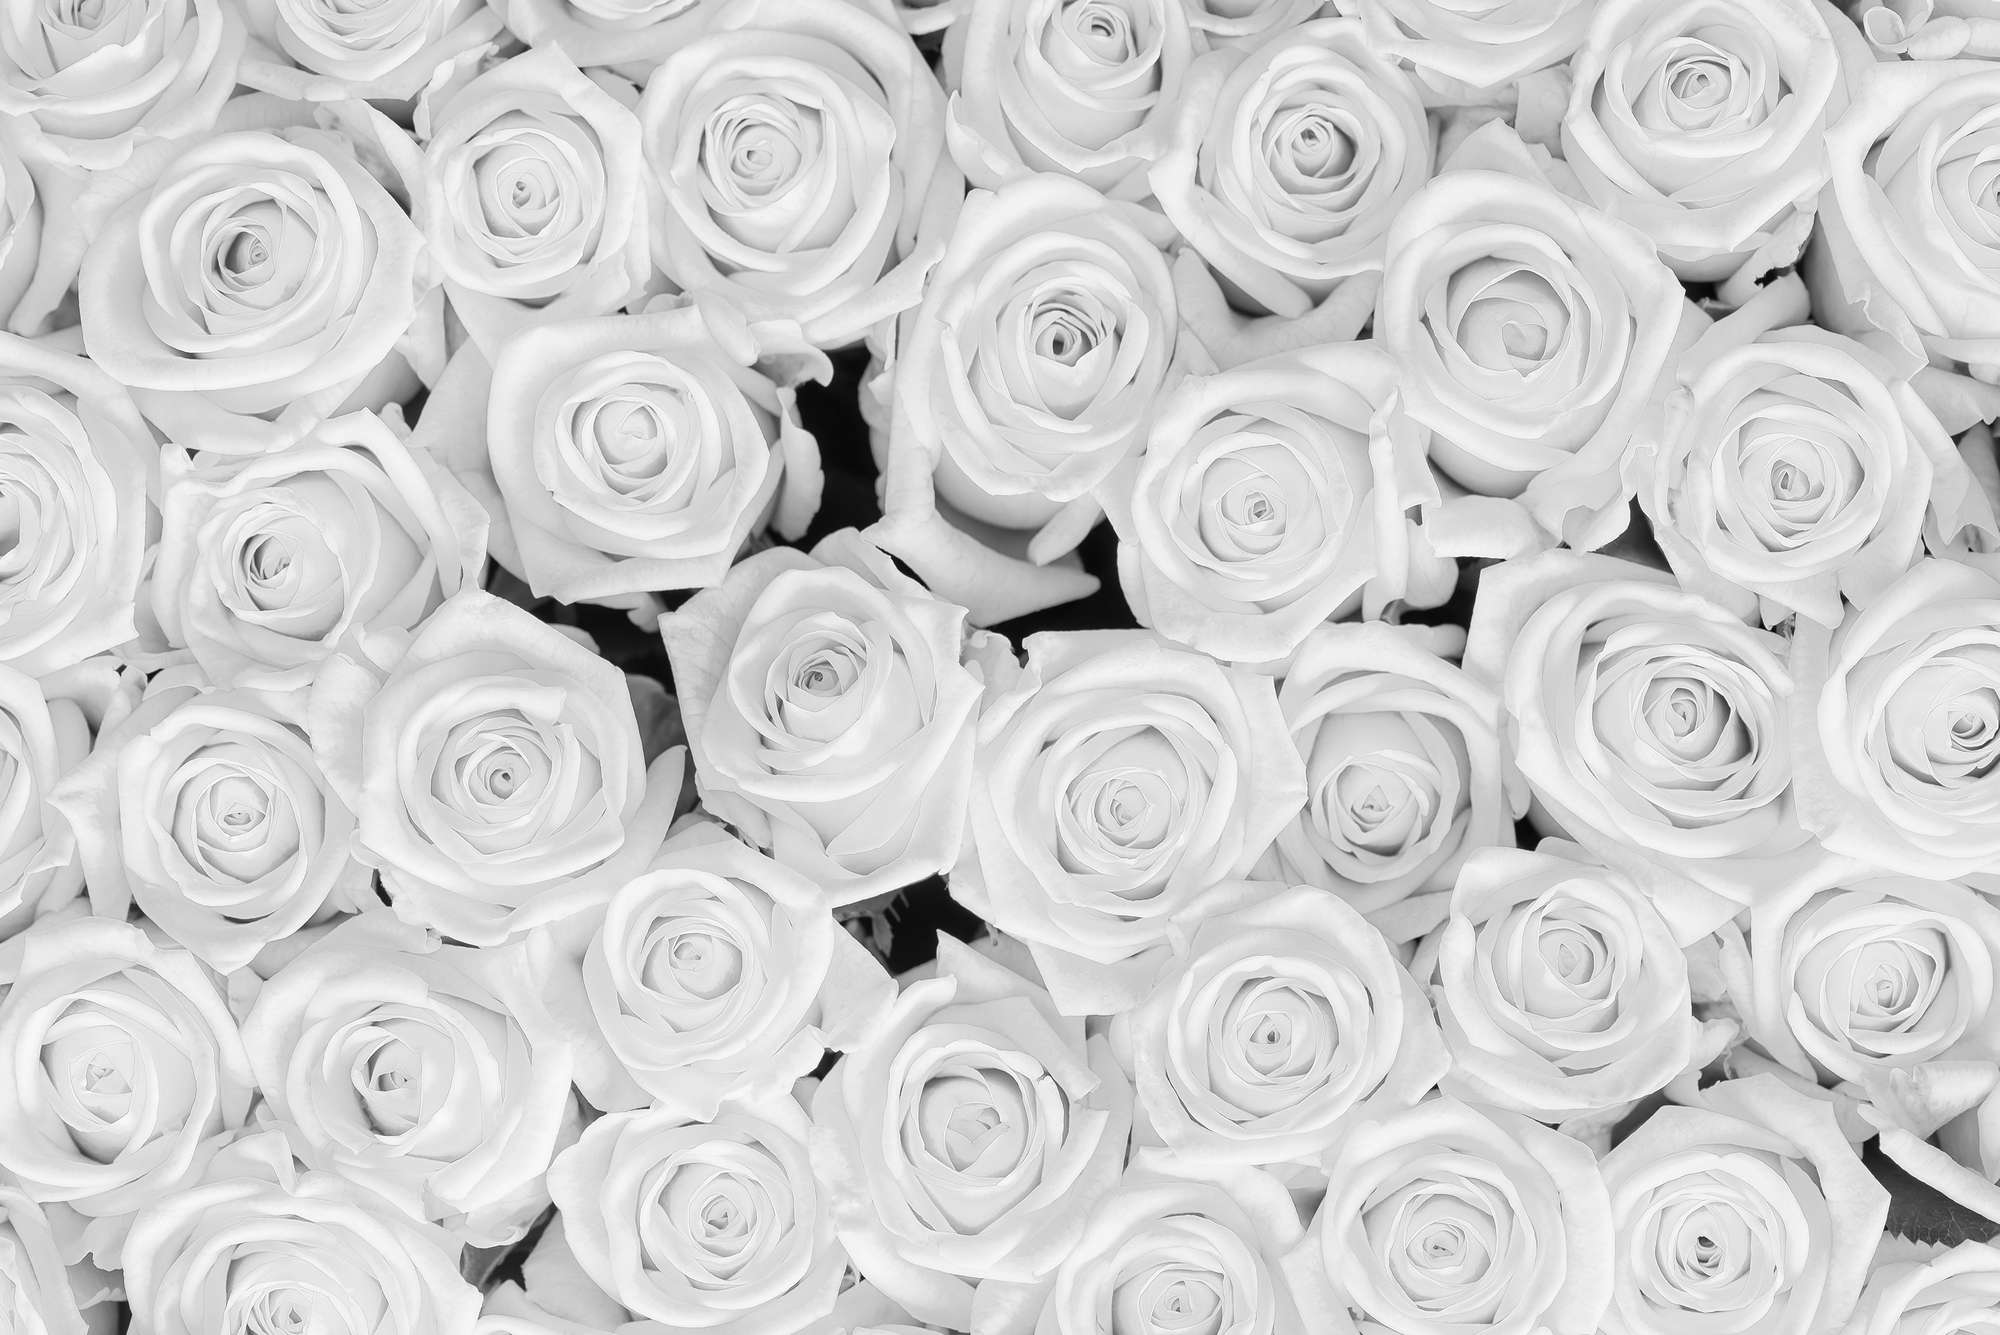             Piante Carta da parati Rose bianche su vello strutturato
        